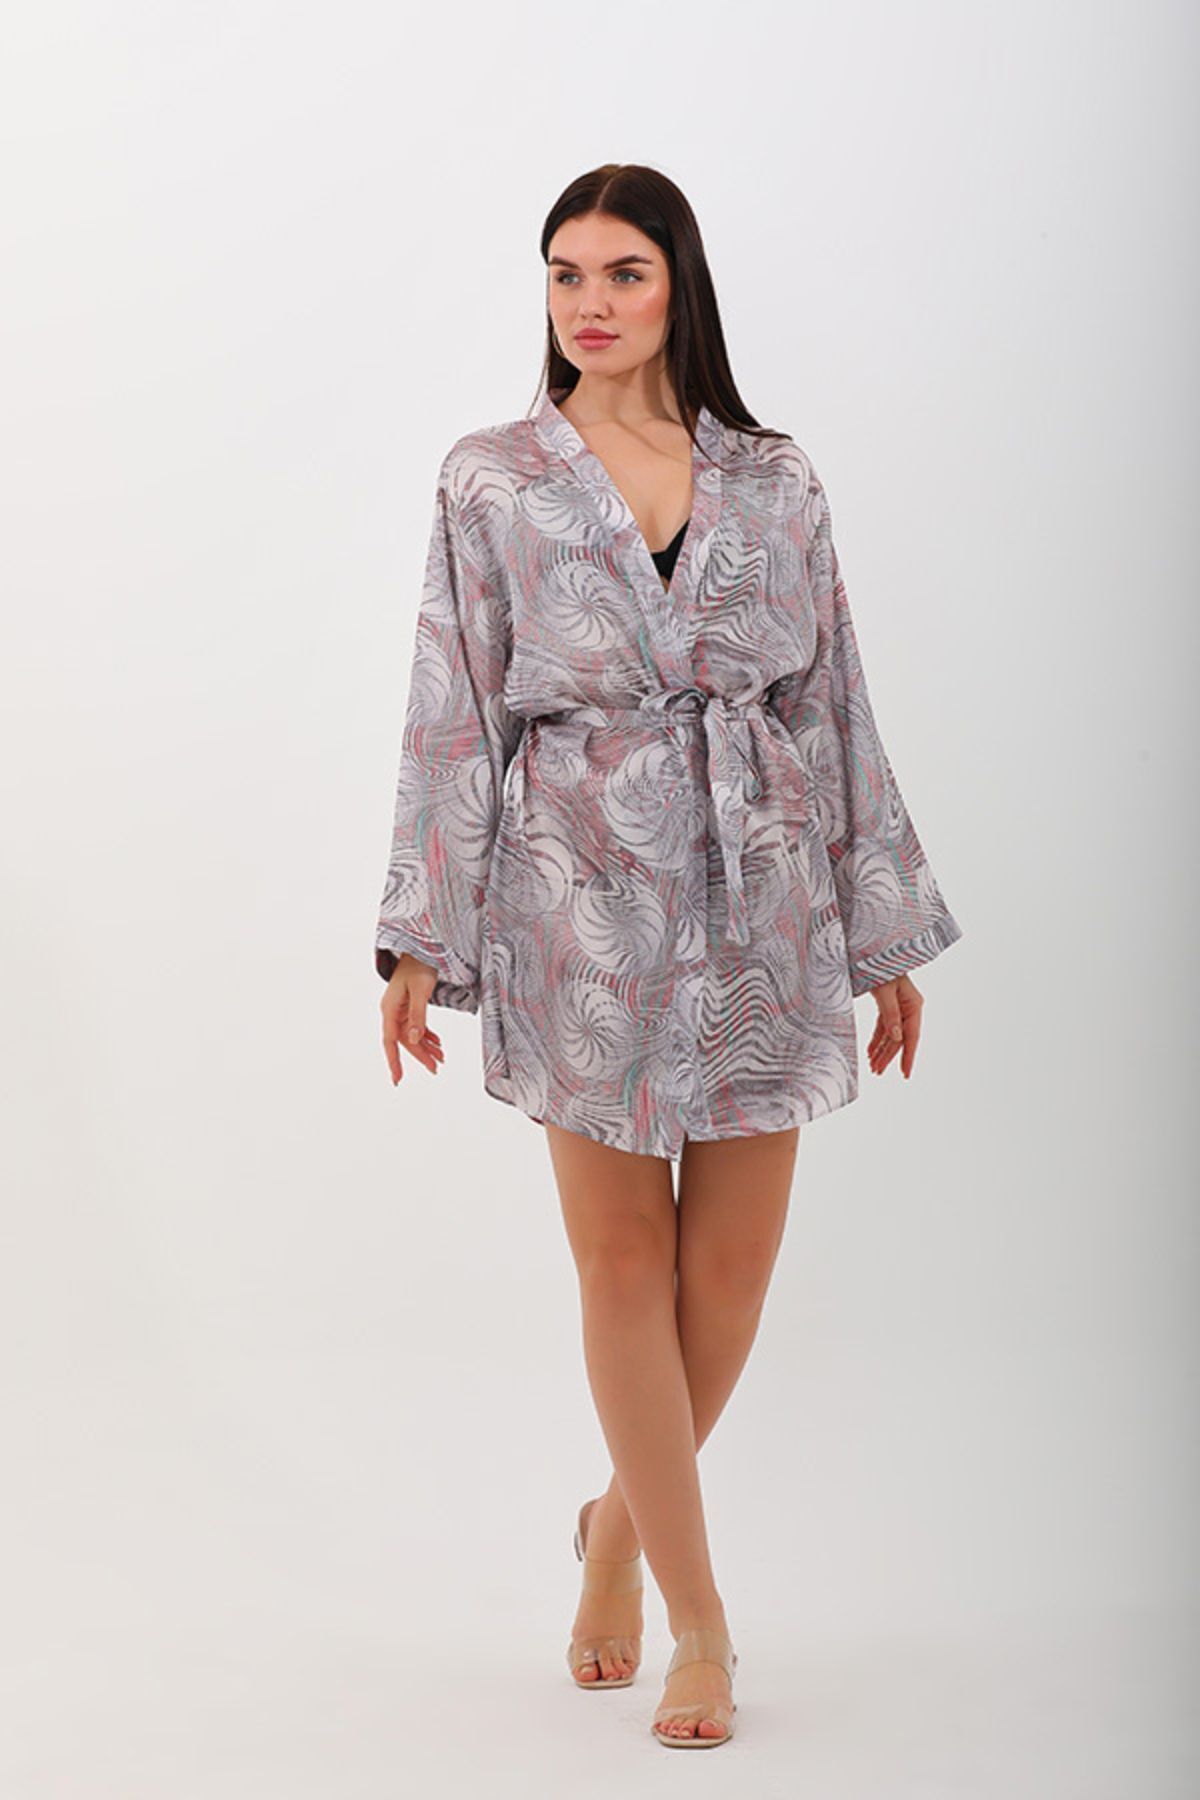 marecaldo Evde Kadın Giyim Modası Gecelik Sabahlık Modeli Unicorno Açık Desen